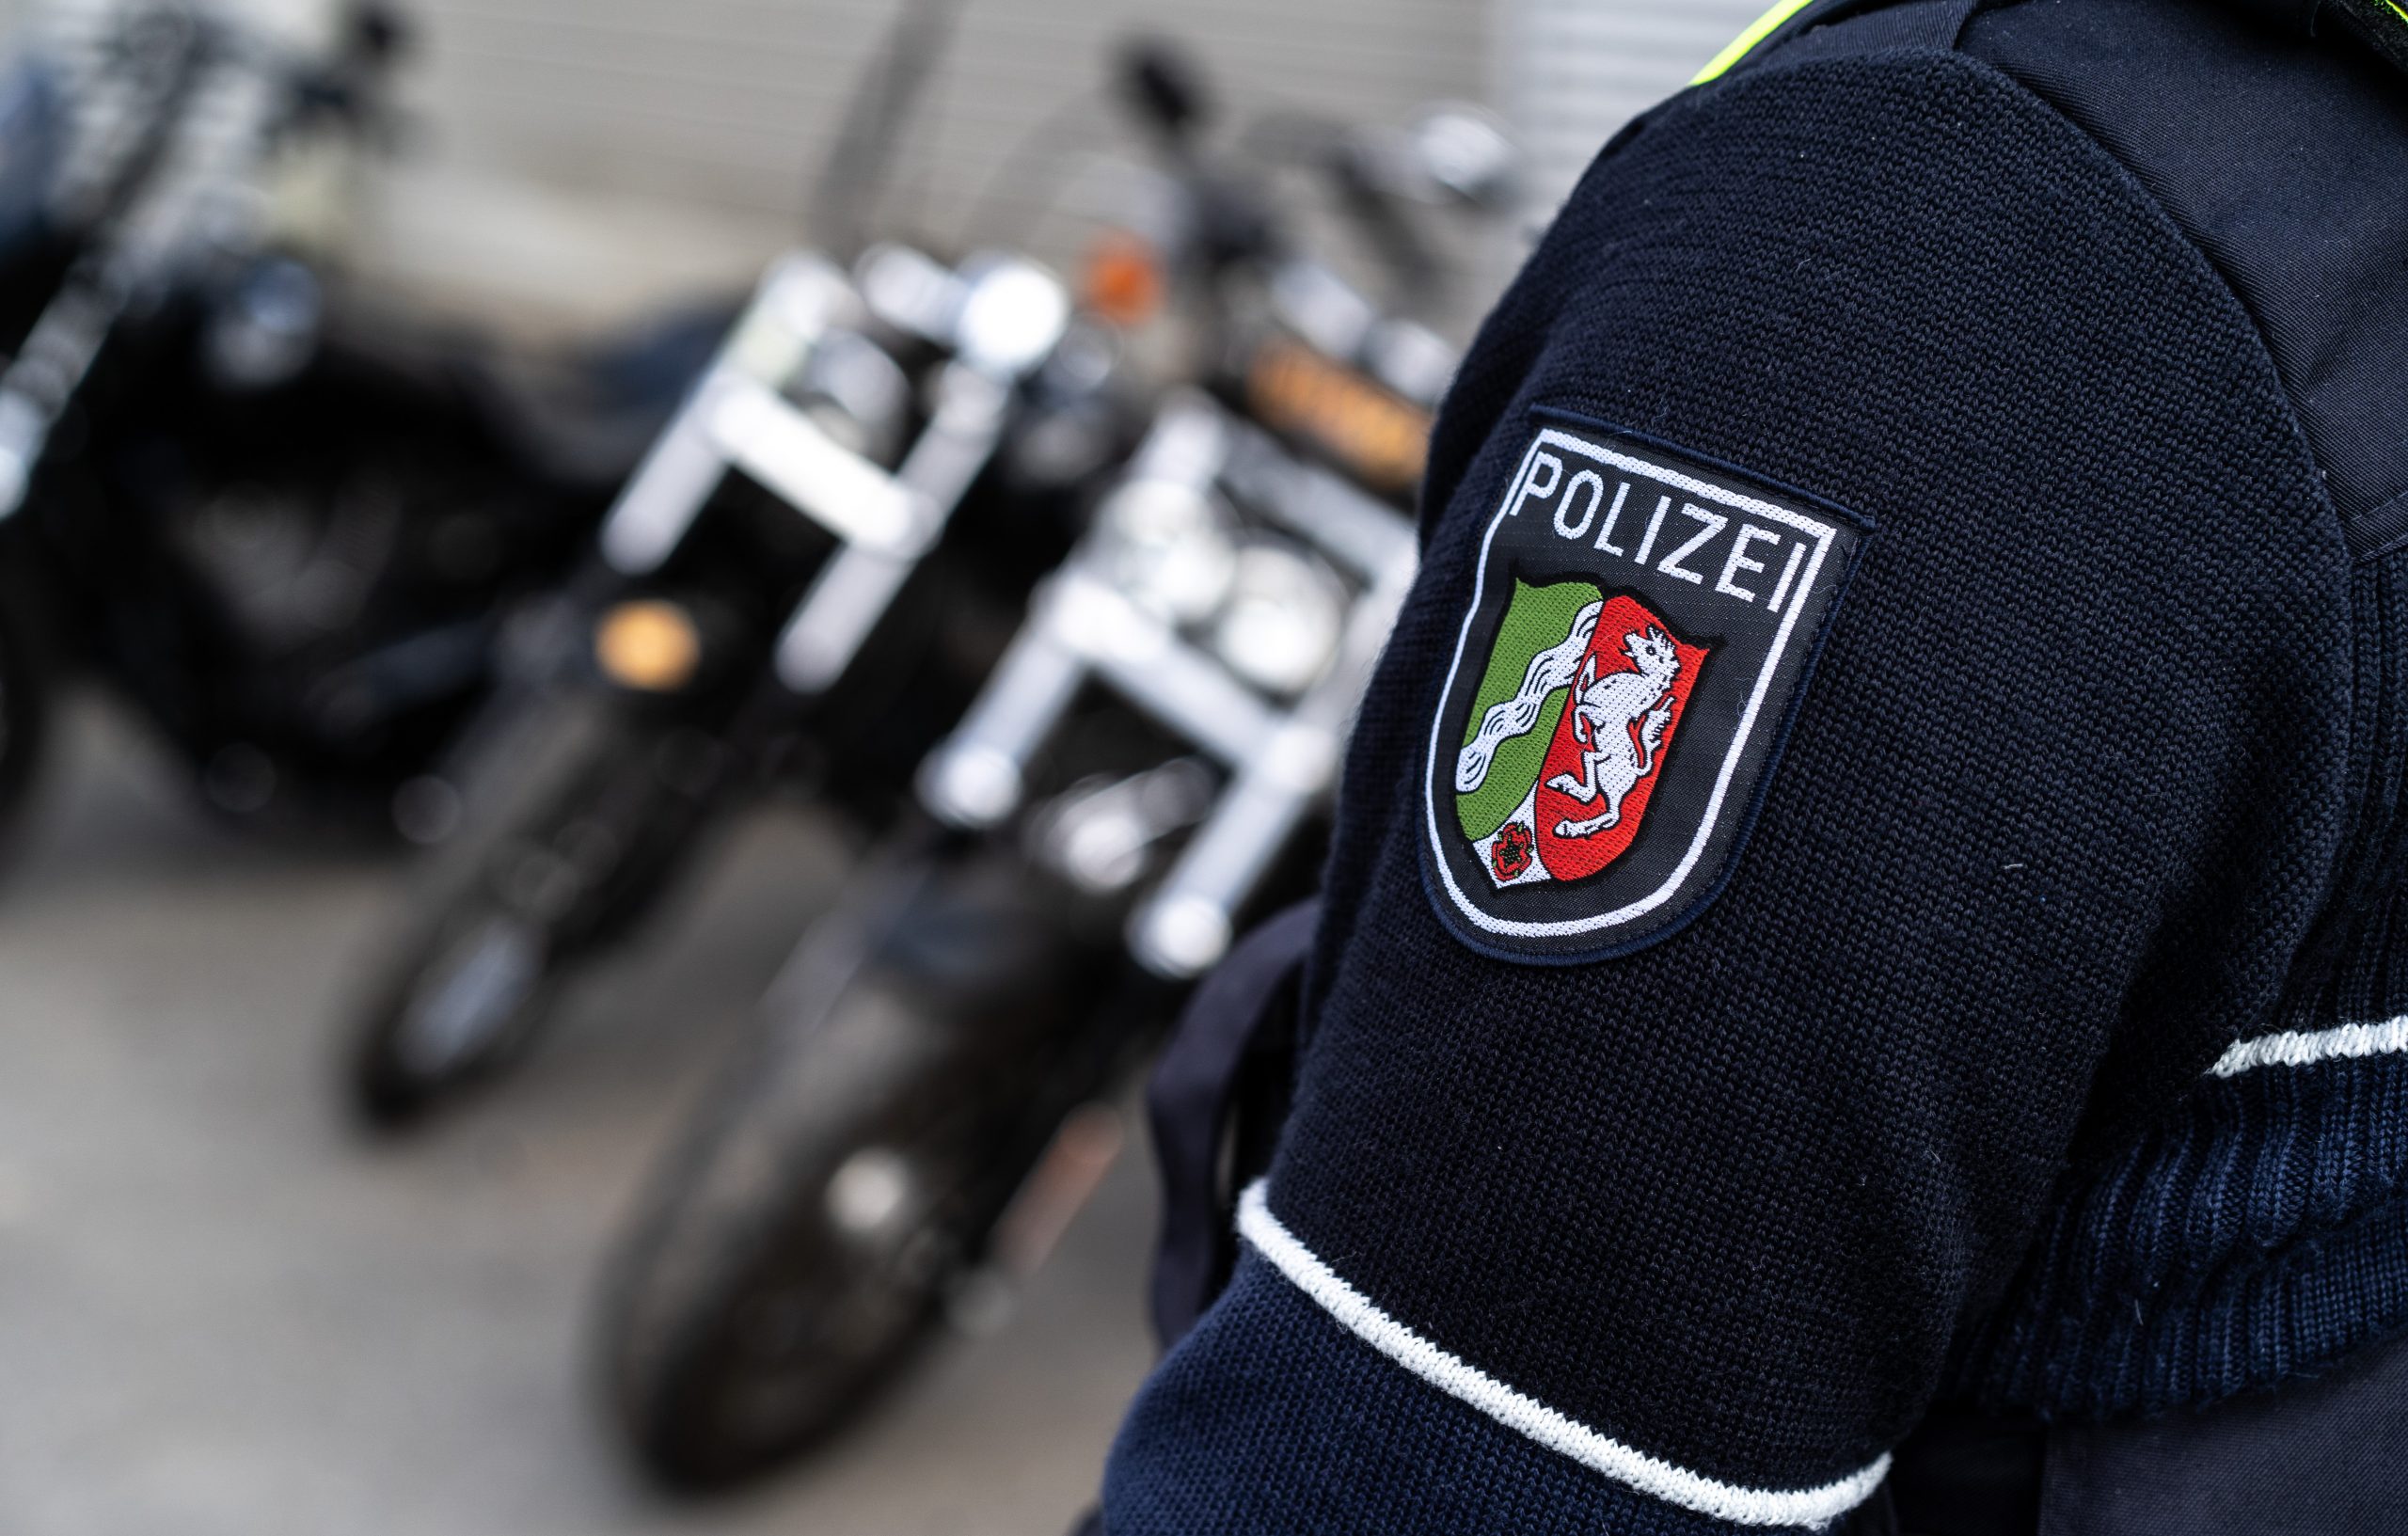 Polizei Motorräder